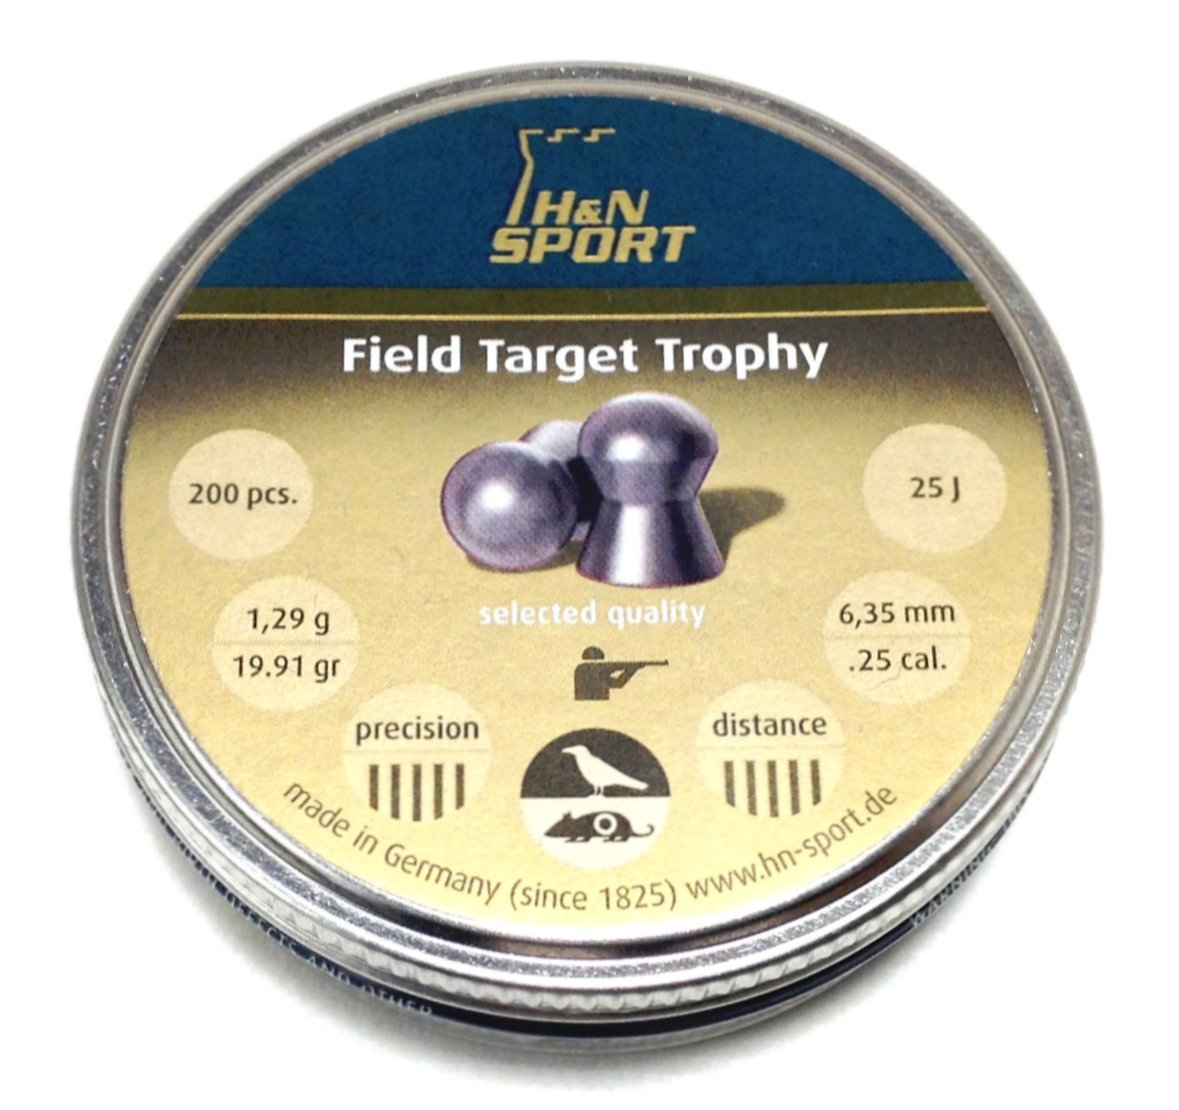 H&N Field Target Trophy .25 Pellets